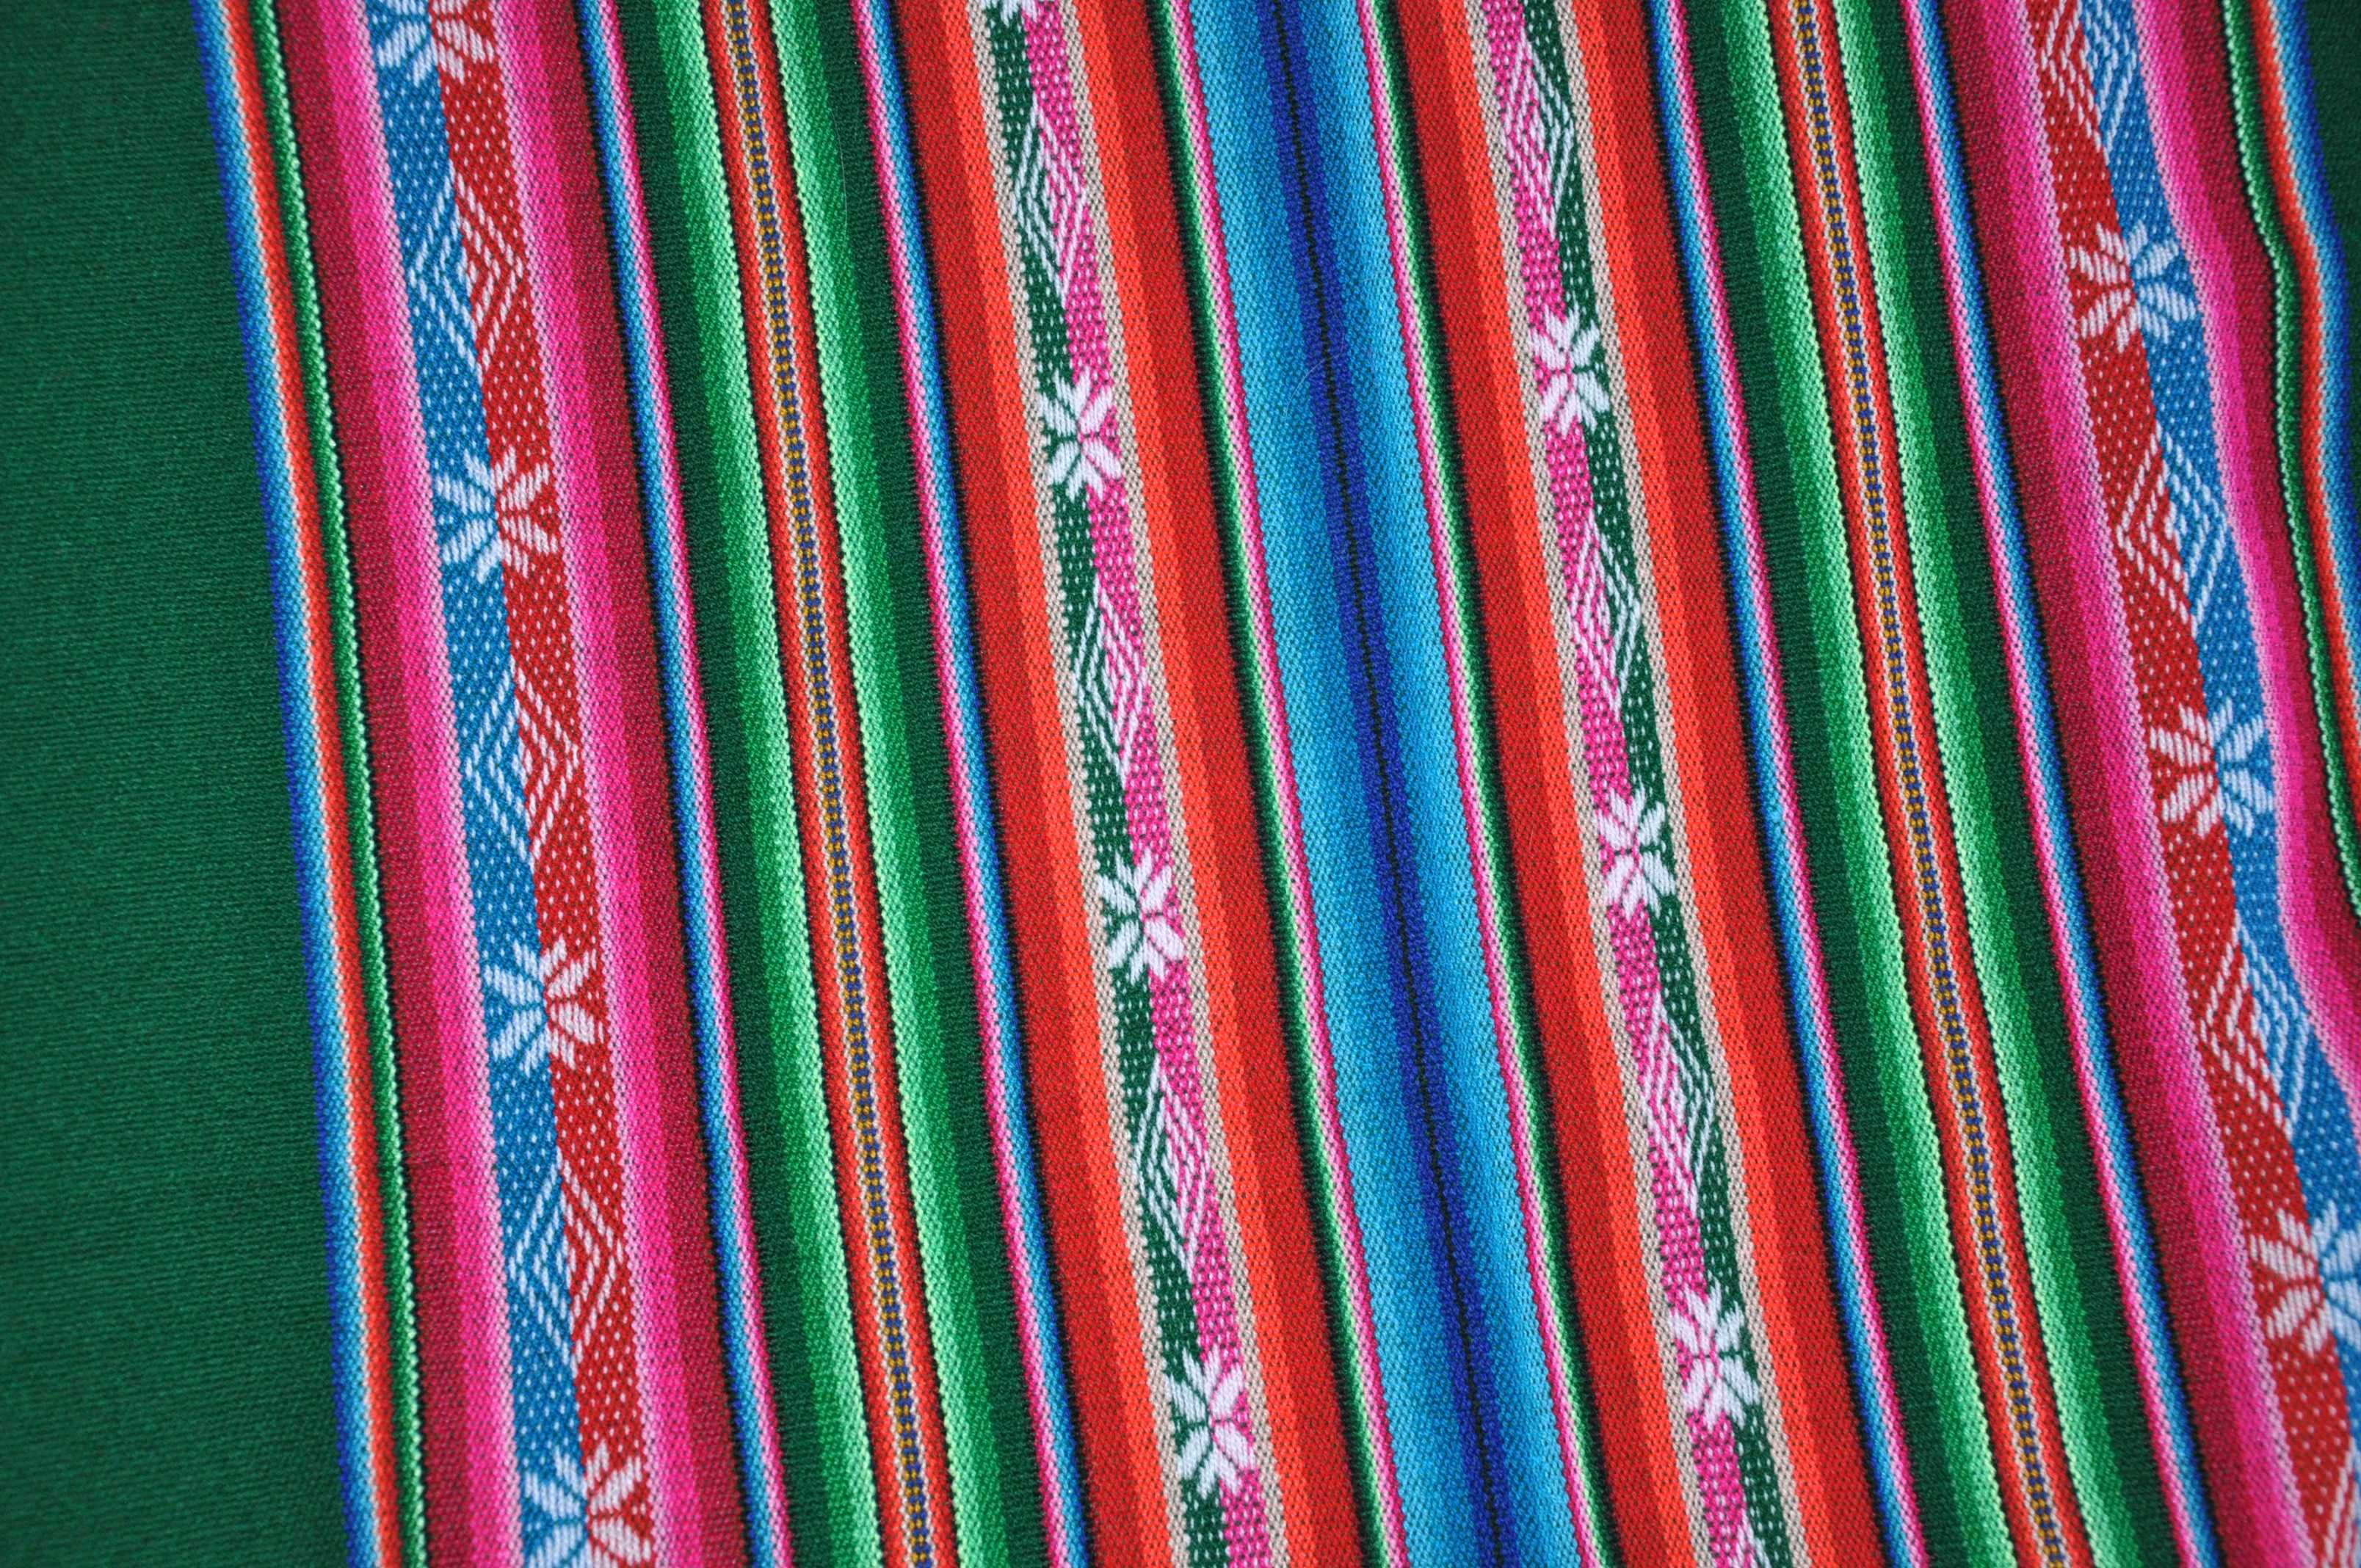 Kolorowy, boliwijski obrus (bieżnik)